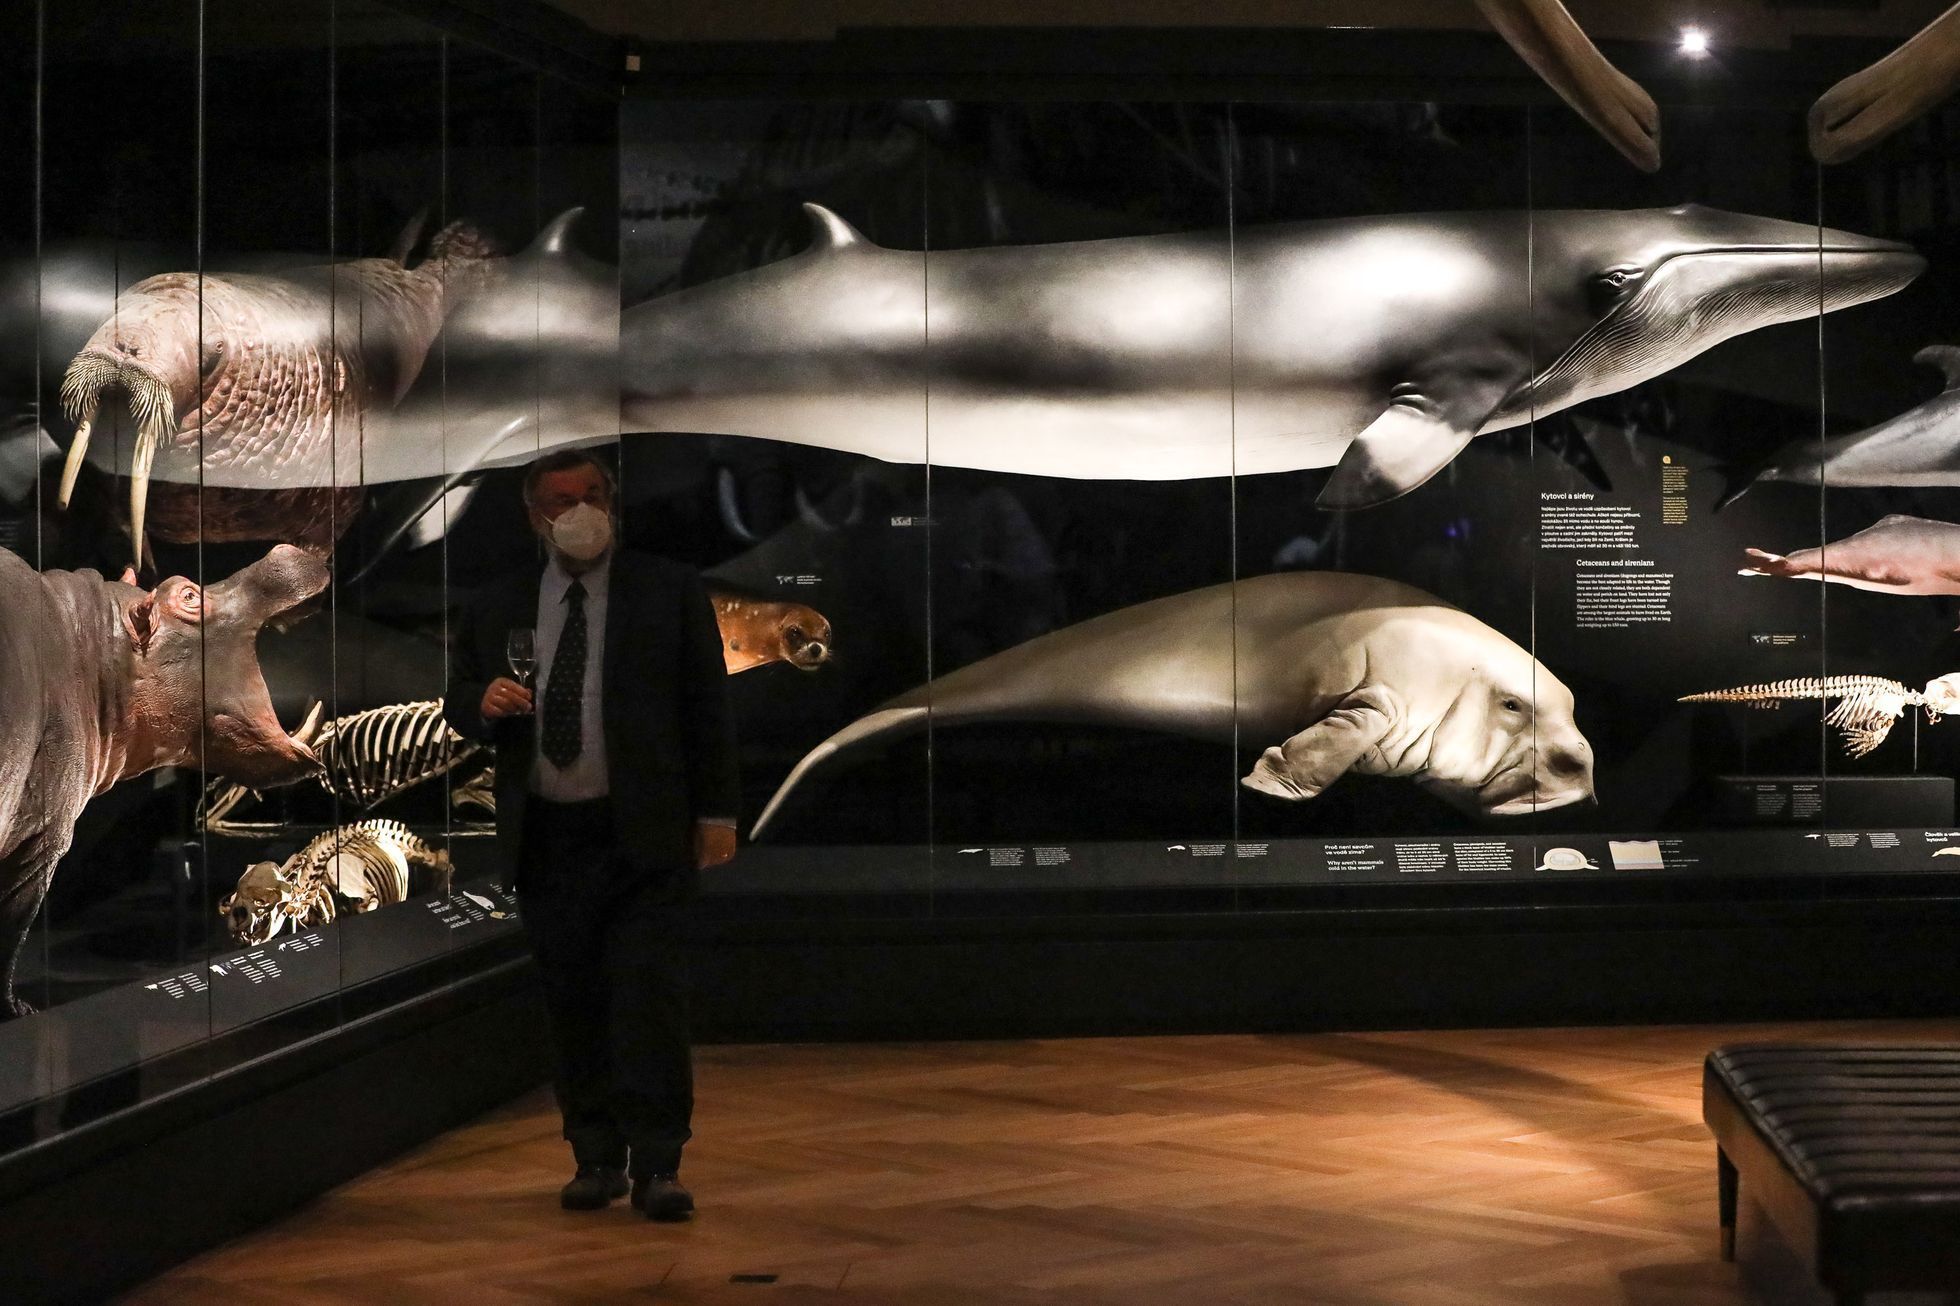 Vycpaný nosorožec Súdán - Národní muzeum, expozice Divočina